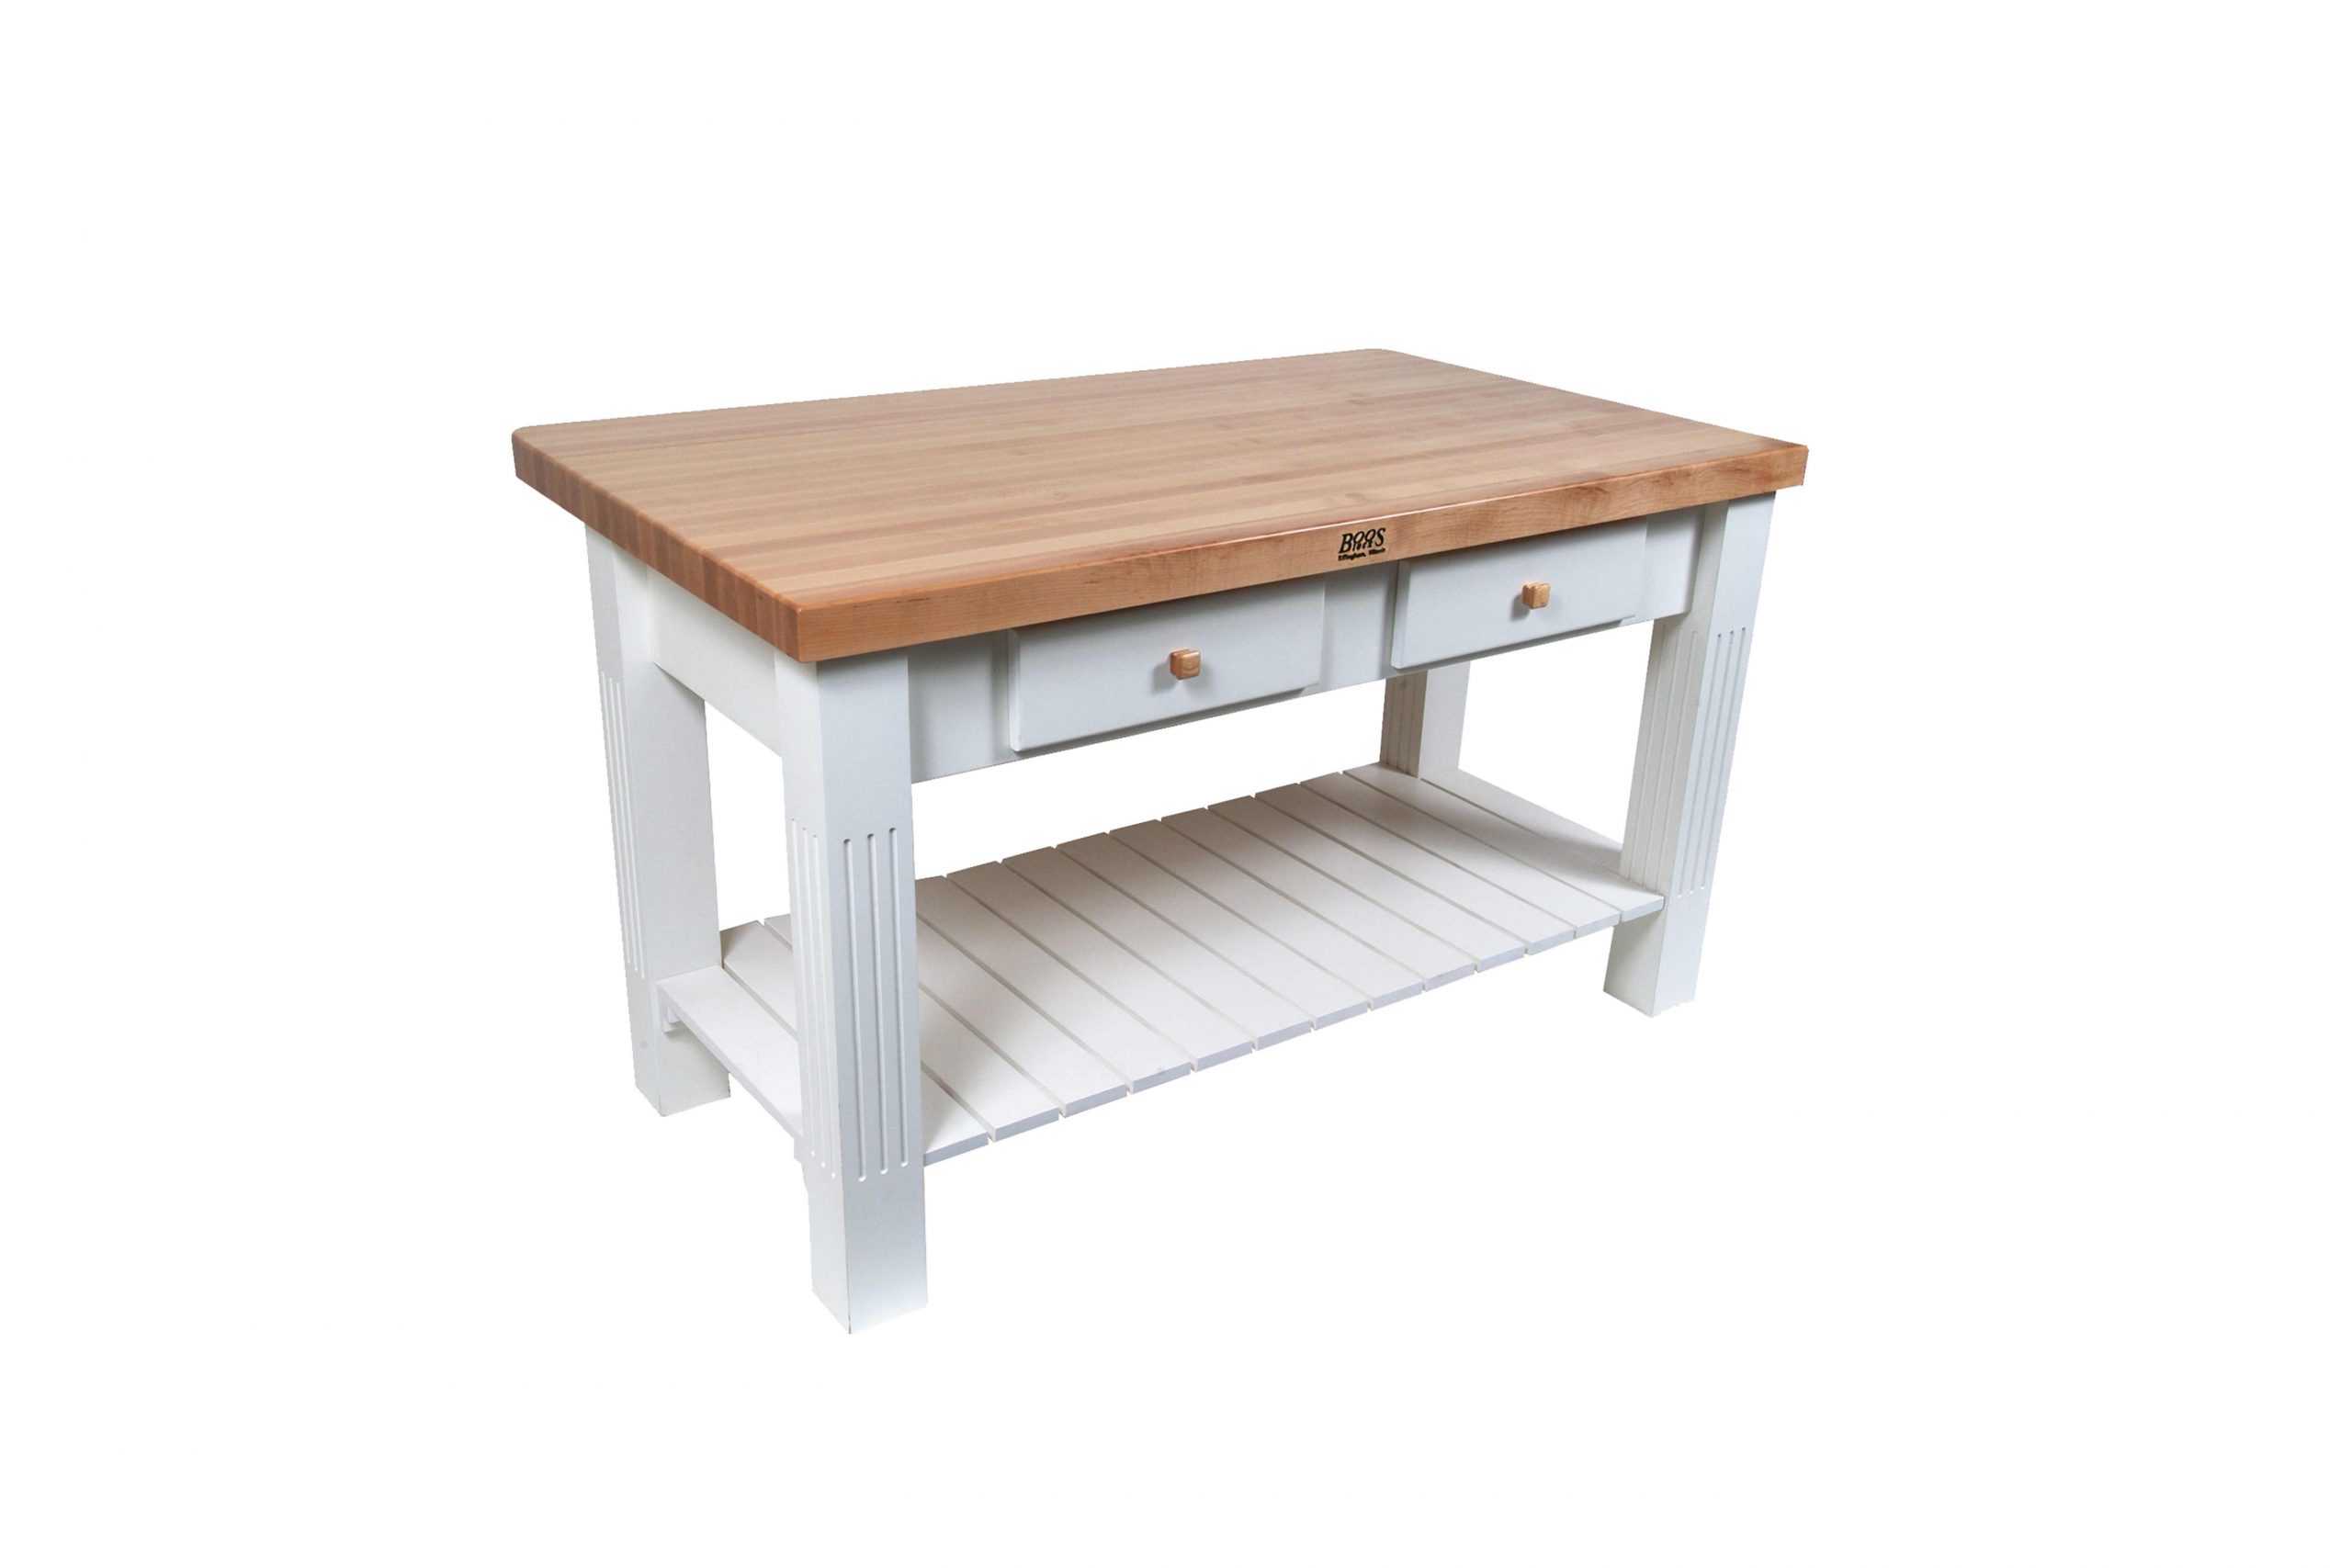 Boos® Maple Grazzi Table mit Langholzplatte inkl. umklappbarem Plattenteil (ca. 20cm), unterer Ablage und Utensilienschubladen 67